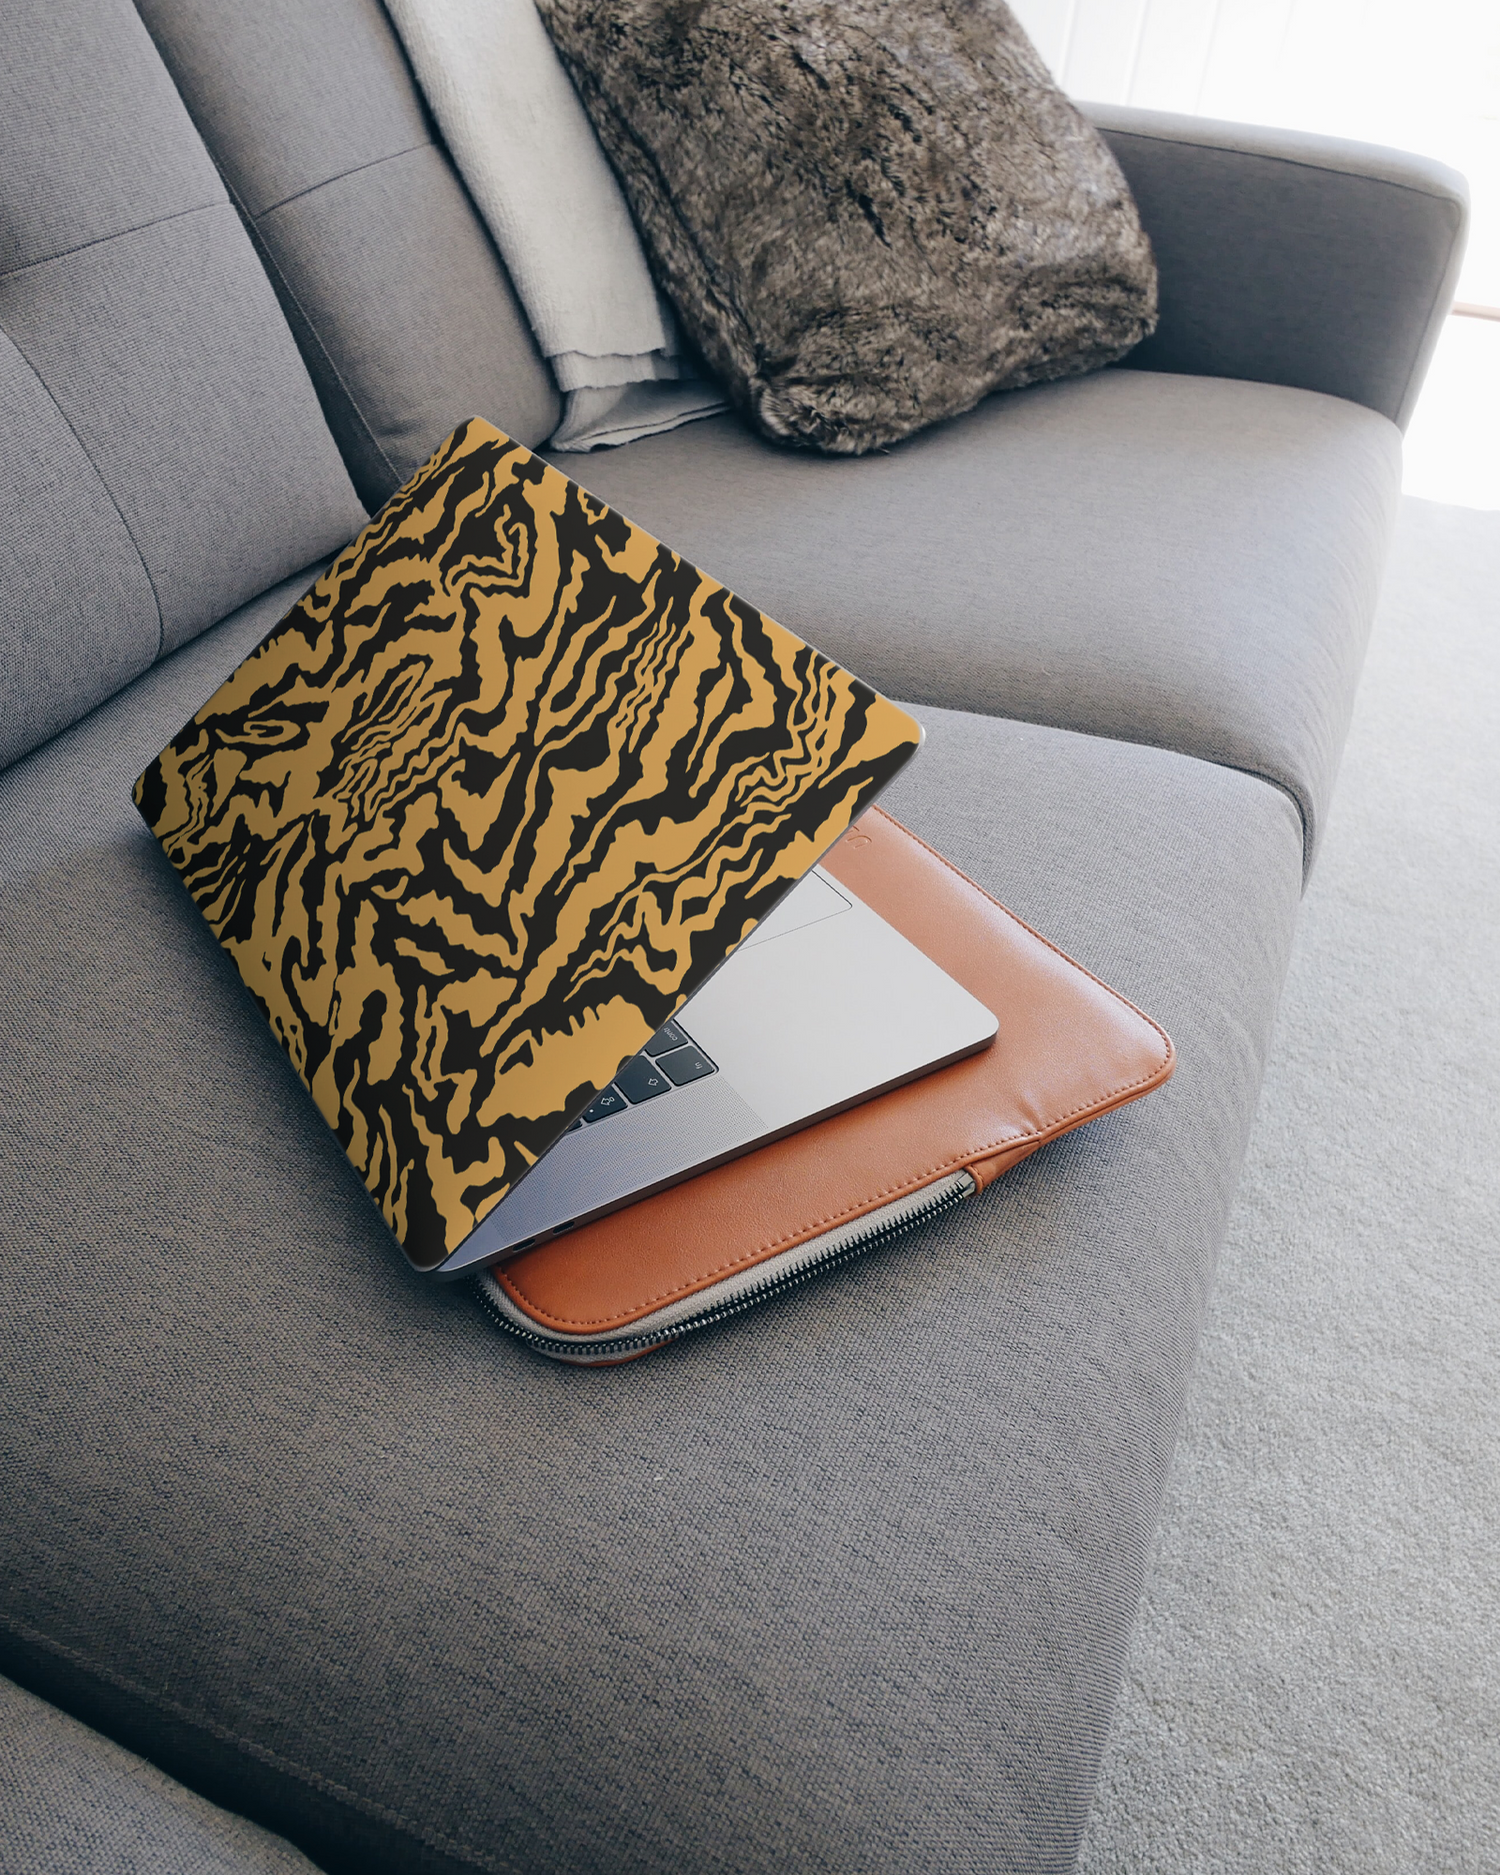 Warped Tiger Stripes Laptop Aufkleber für 15 Zoll Apple MacBooks auf dem Sofa